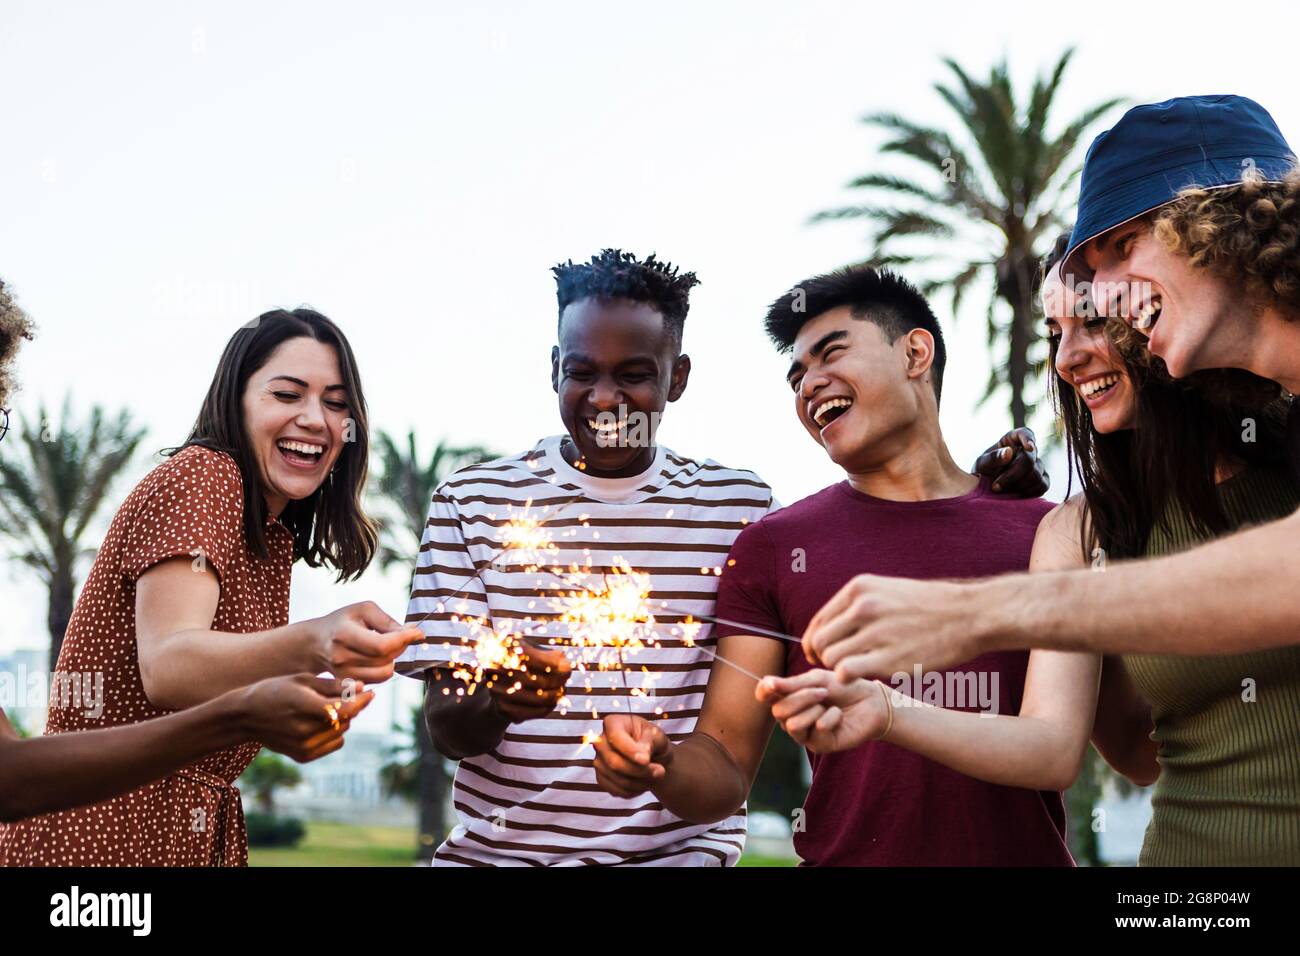 Fröhliche, multirassische Menschen, die Sommerparty am Strand genießen - eine vielfältige Gruppe junger Erwachsener, die gemeinsam mit Wunderkerzen im Freien feiern - Stockfoto